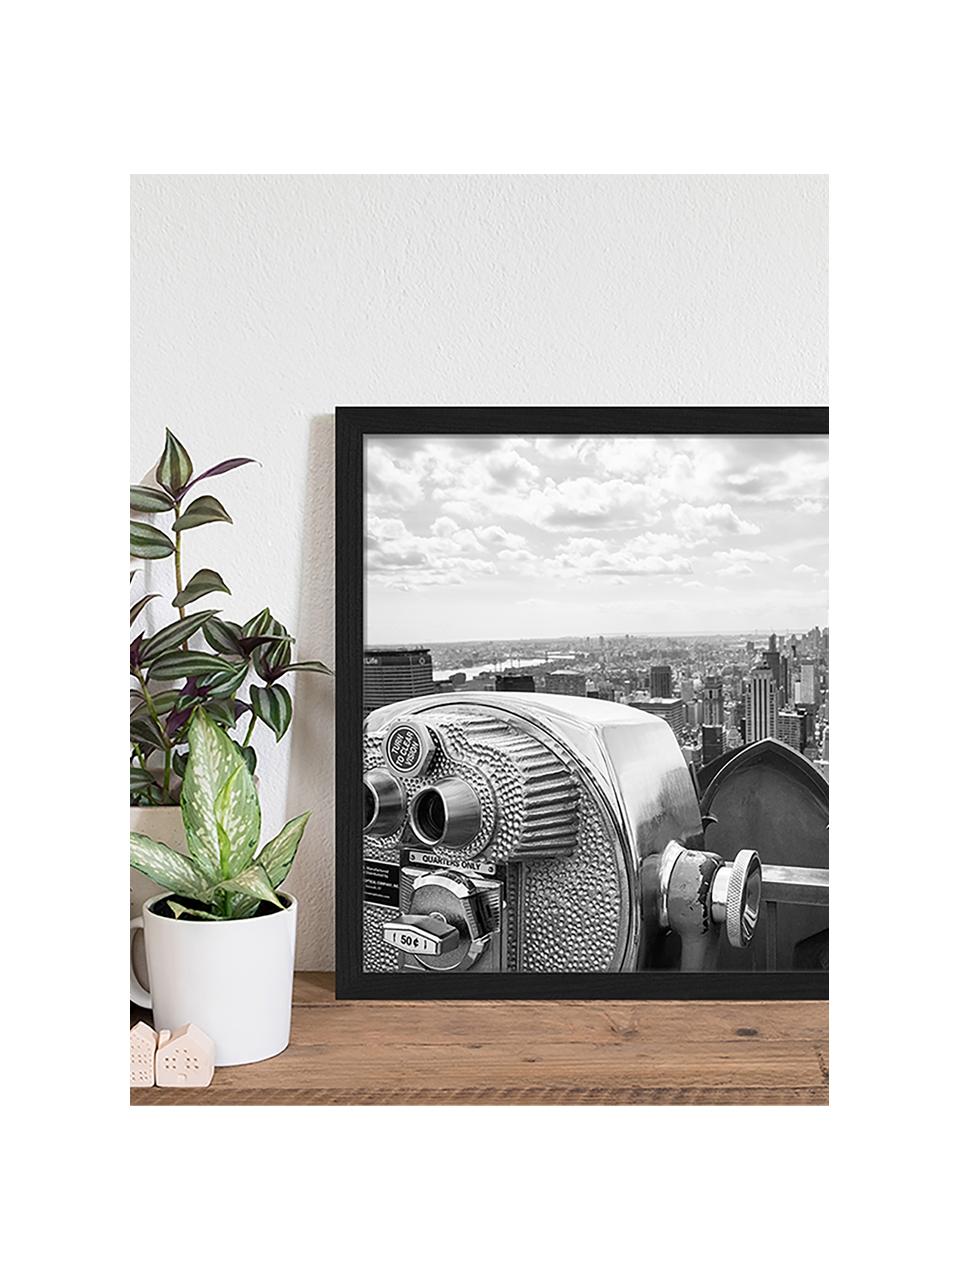 Gerahmter Digitaldruck View Of Midtown Manhattan New York City, Bild: Digitaldruck auf Papier, , Rahmen: Holz, lackiert, Front: Plexiglas, Schwarz, Weiß, B 53 x H 43 cm